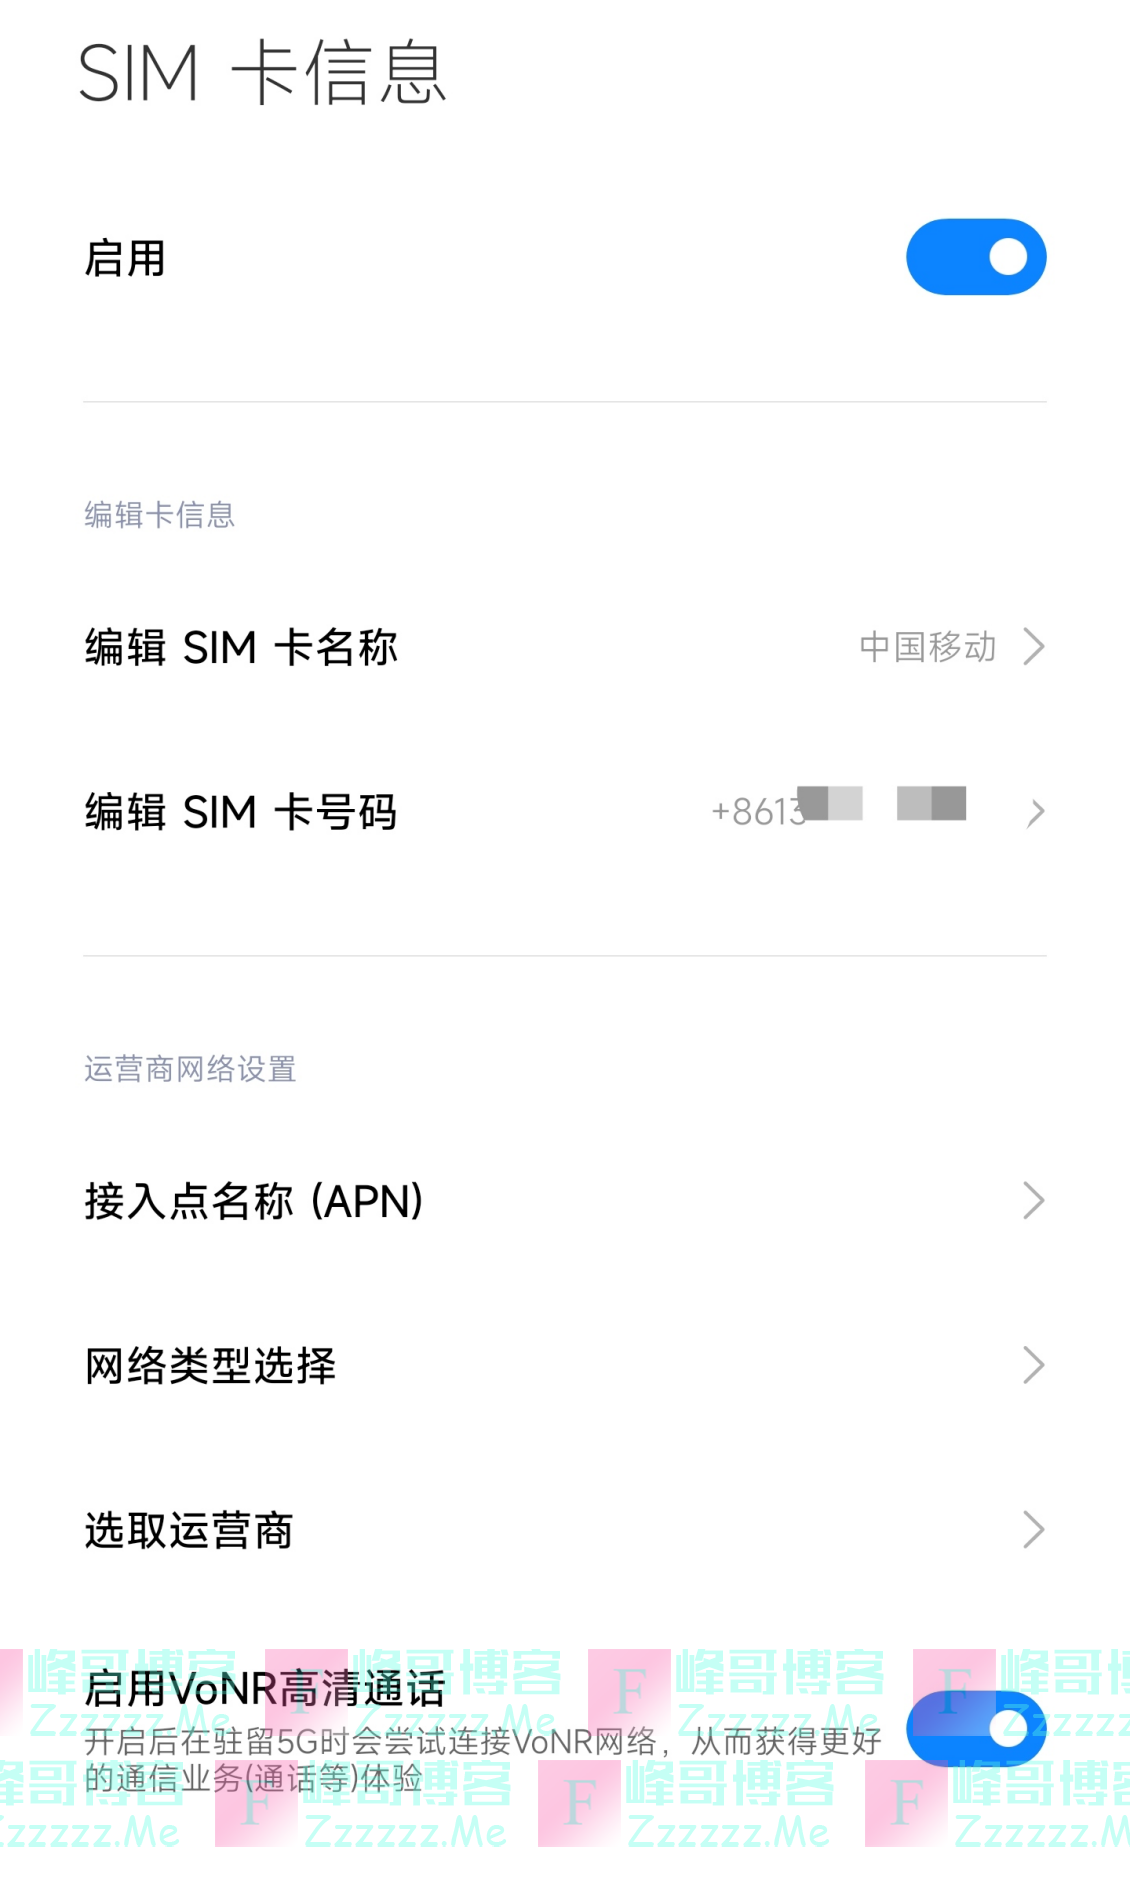 5G新探索！小米全面支持中国移动5G新通话业务